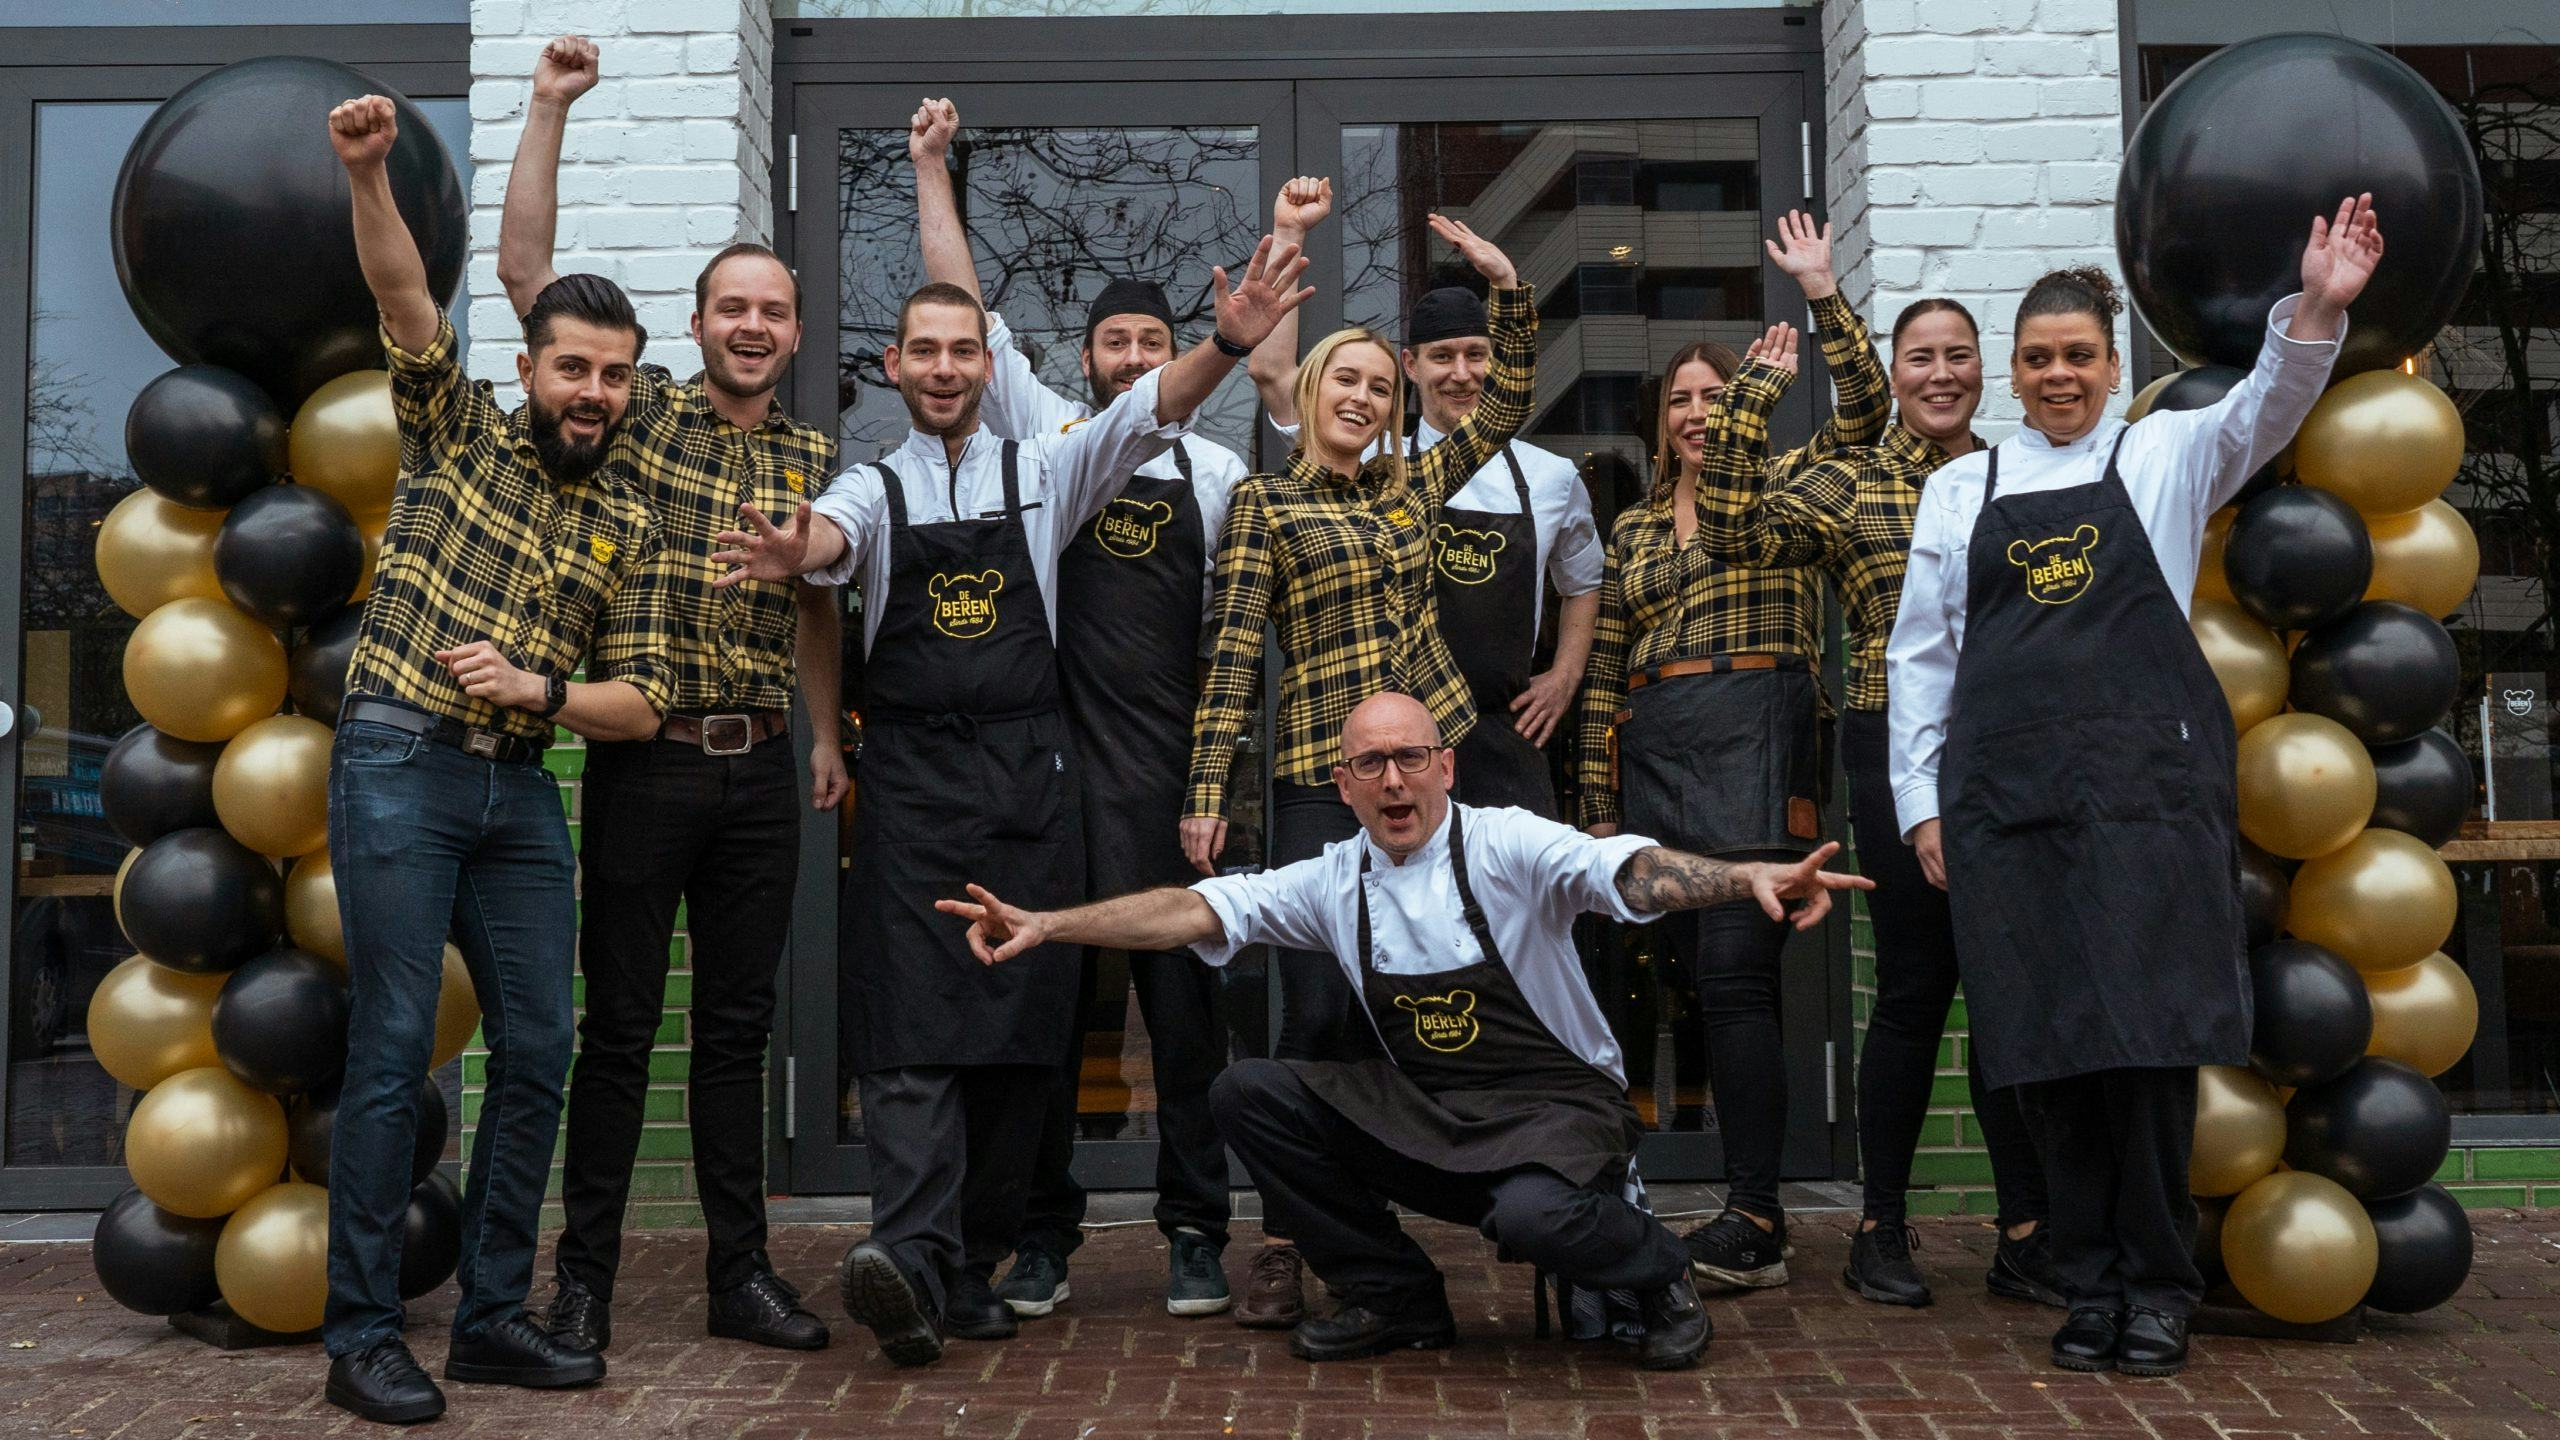 De Beren opent derde restaurant in thuisstad Rotterdam